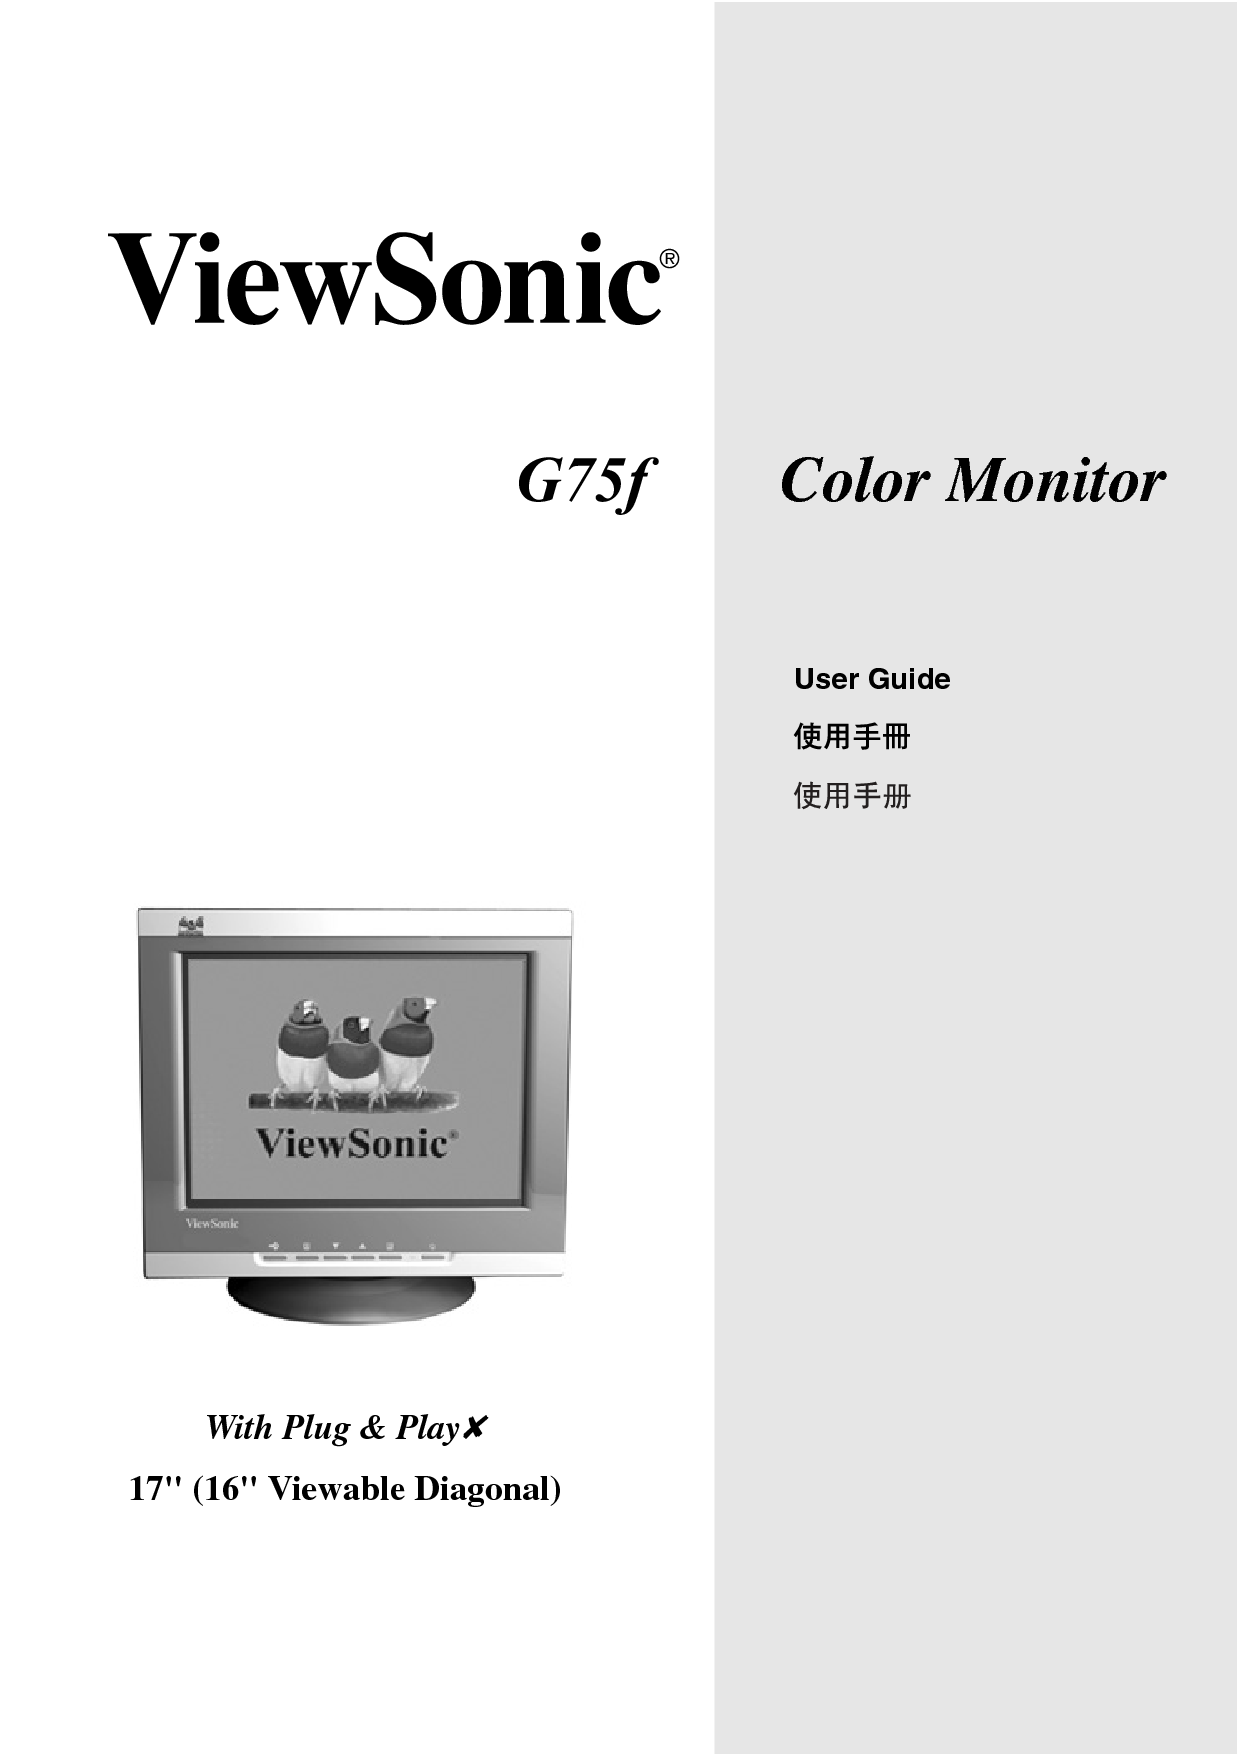 优派 ViewSonic G75f 使用手册 封面